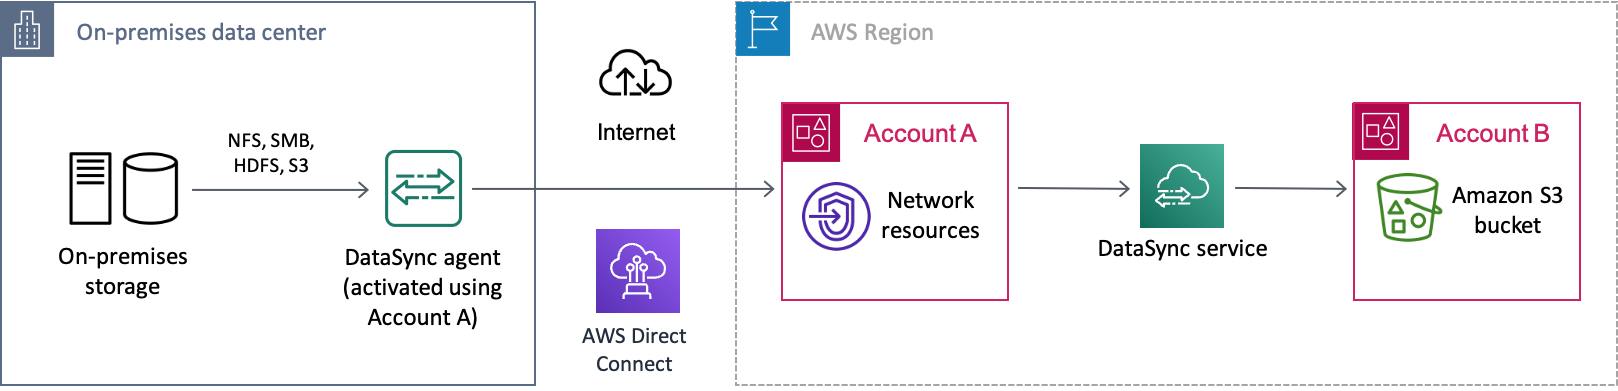 Un ejemplo deDataSync escenario de transferencia de datos desde un sistema de almacenamiento local a través de Internet aAWS. Los datos se transfieren primero a unaCuenta de AWS (cuenta A) y, finalmente, a un bucket de Amazon S3 en otraCuenta de AWS (cuenta B).